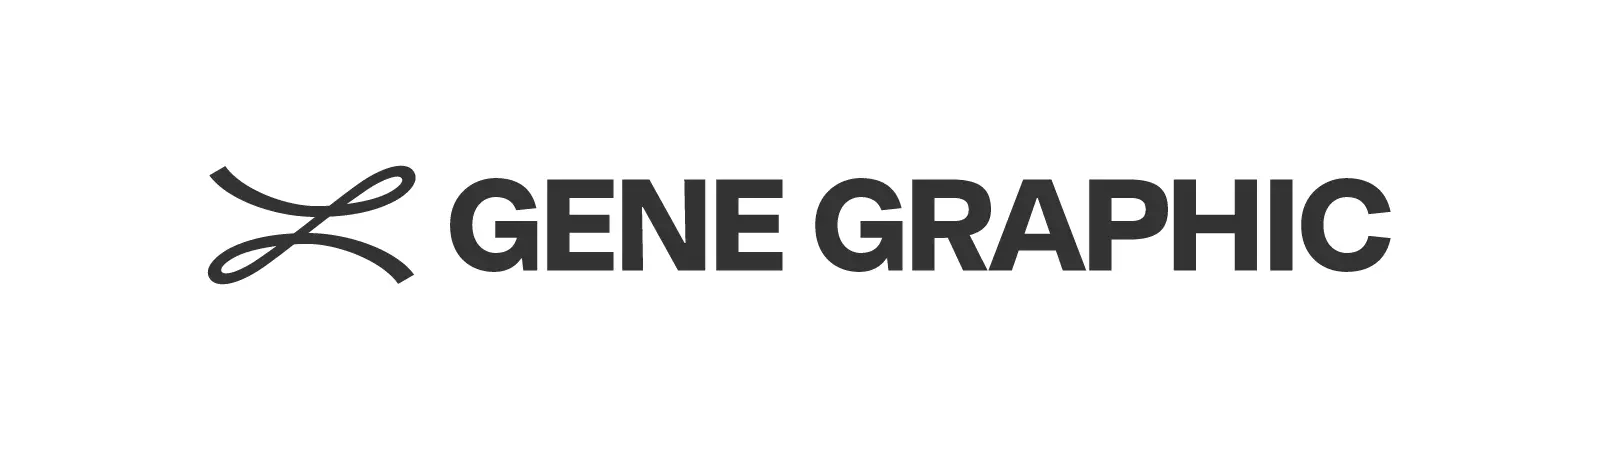 GENE GRAPHIC ロゴ